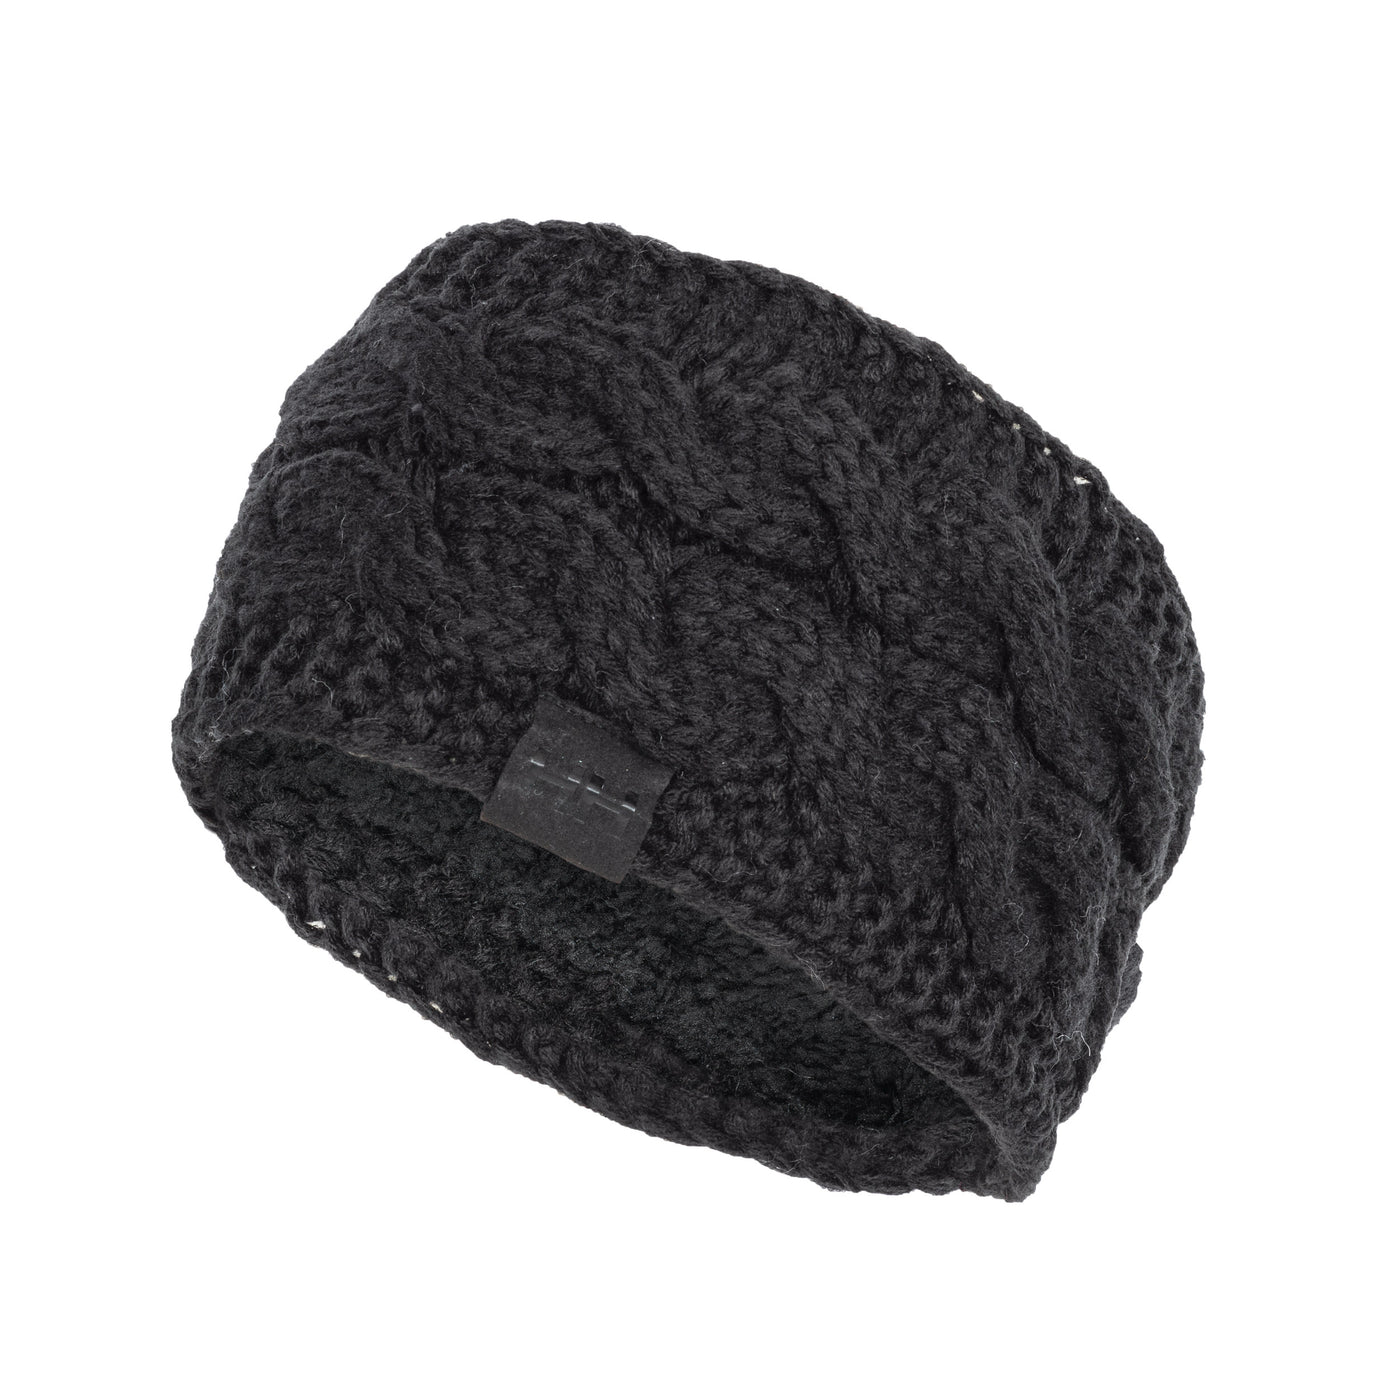 Black Thermal Knit Headband